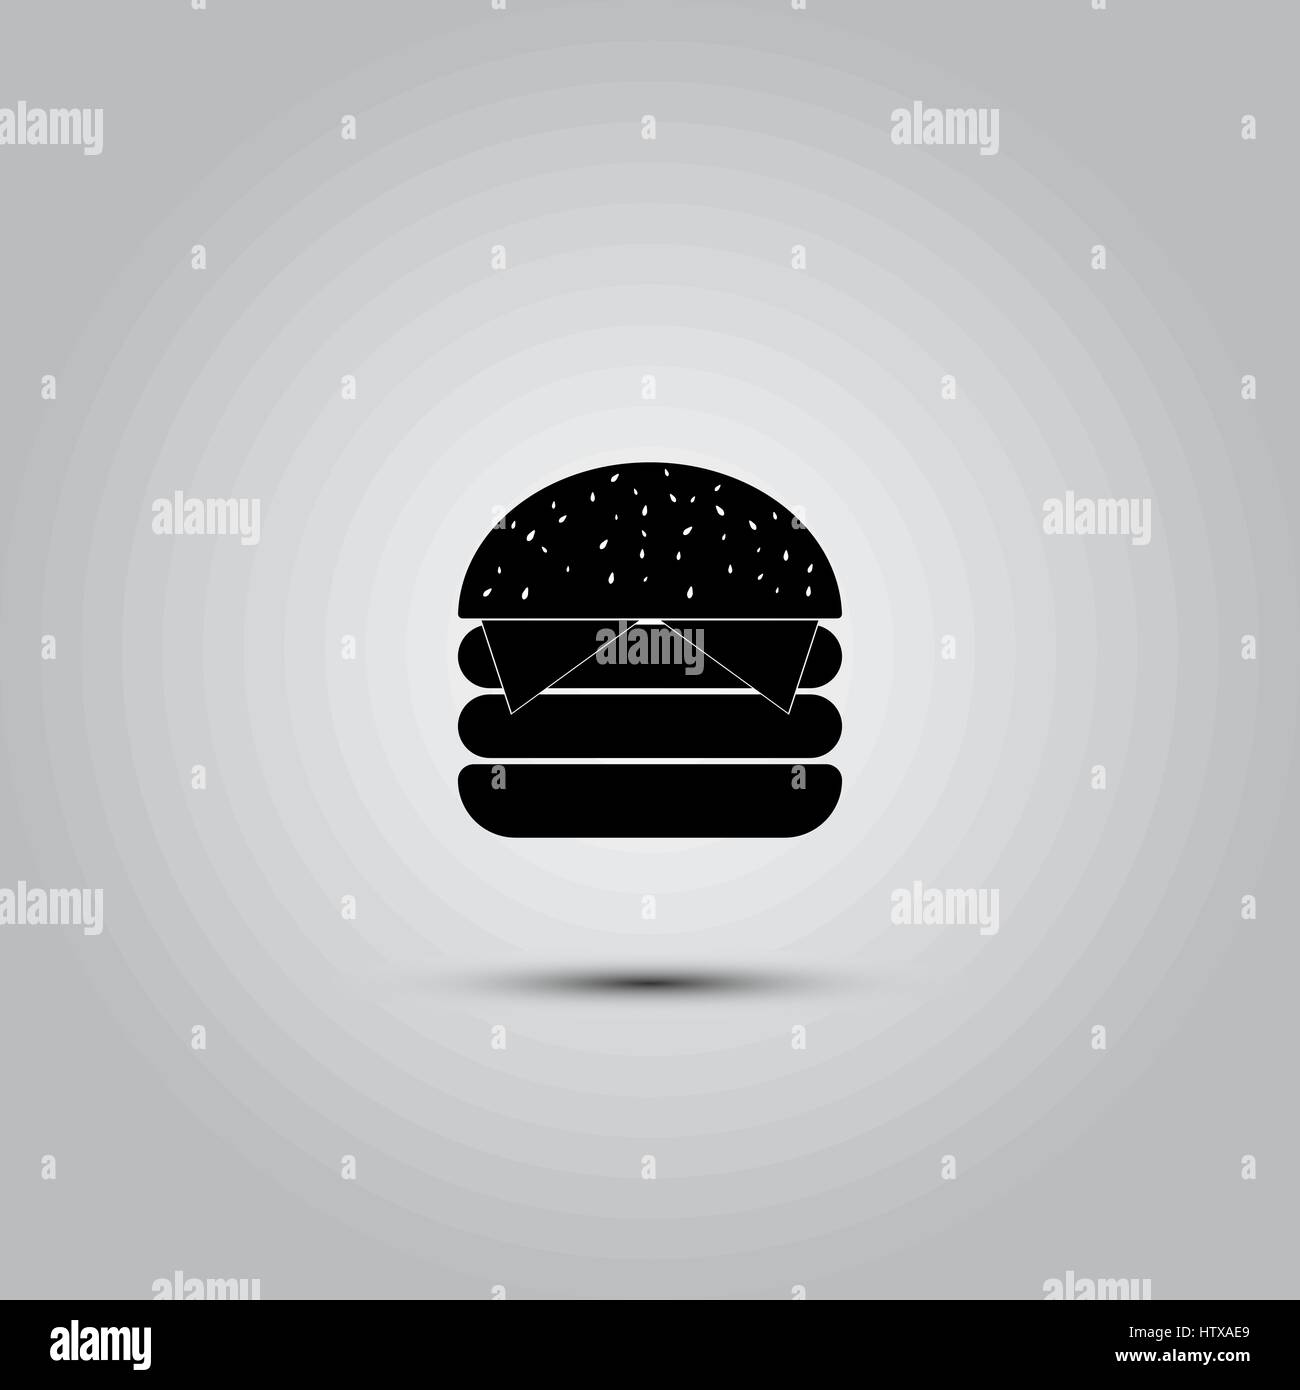 L'icône d'hamburger, vecteur illustration solide, le pictogramme isolé sur gray Illustration de Vecteur